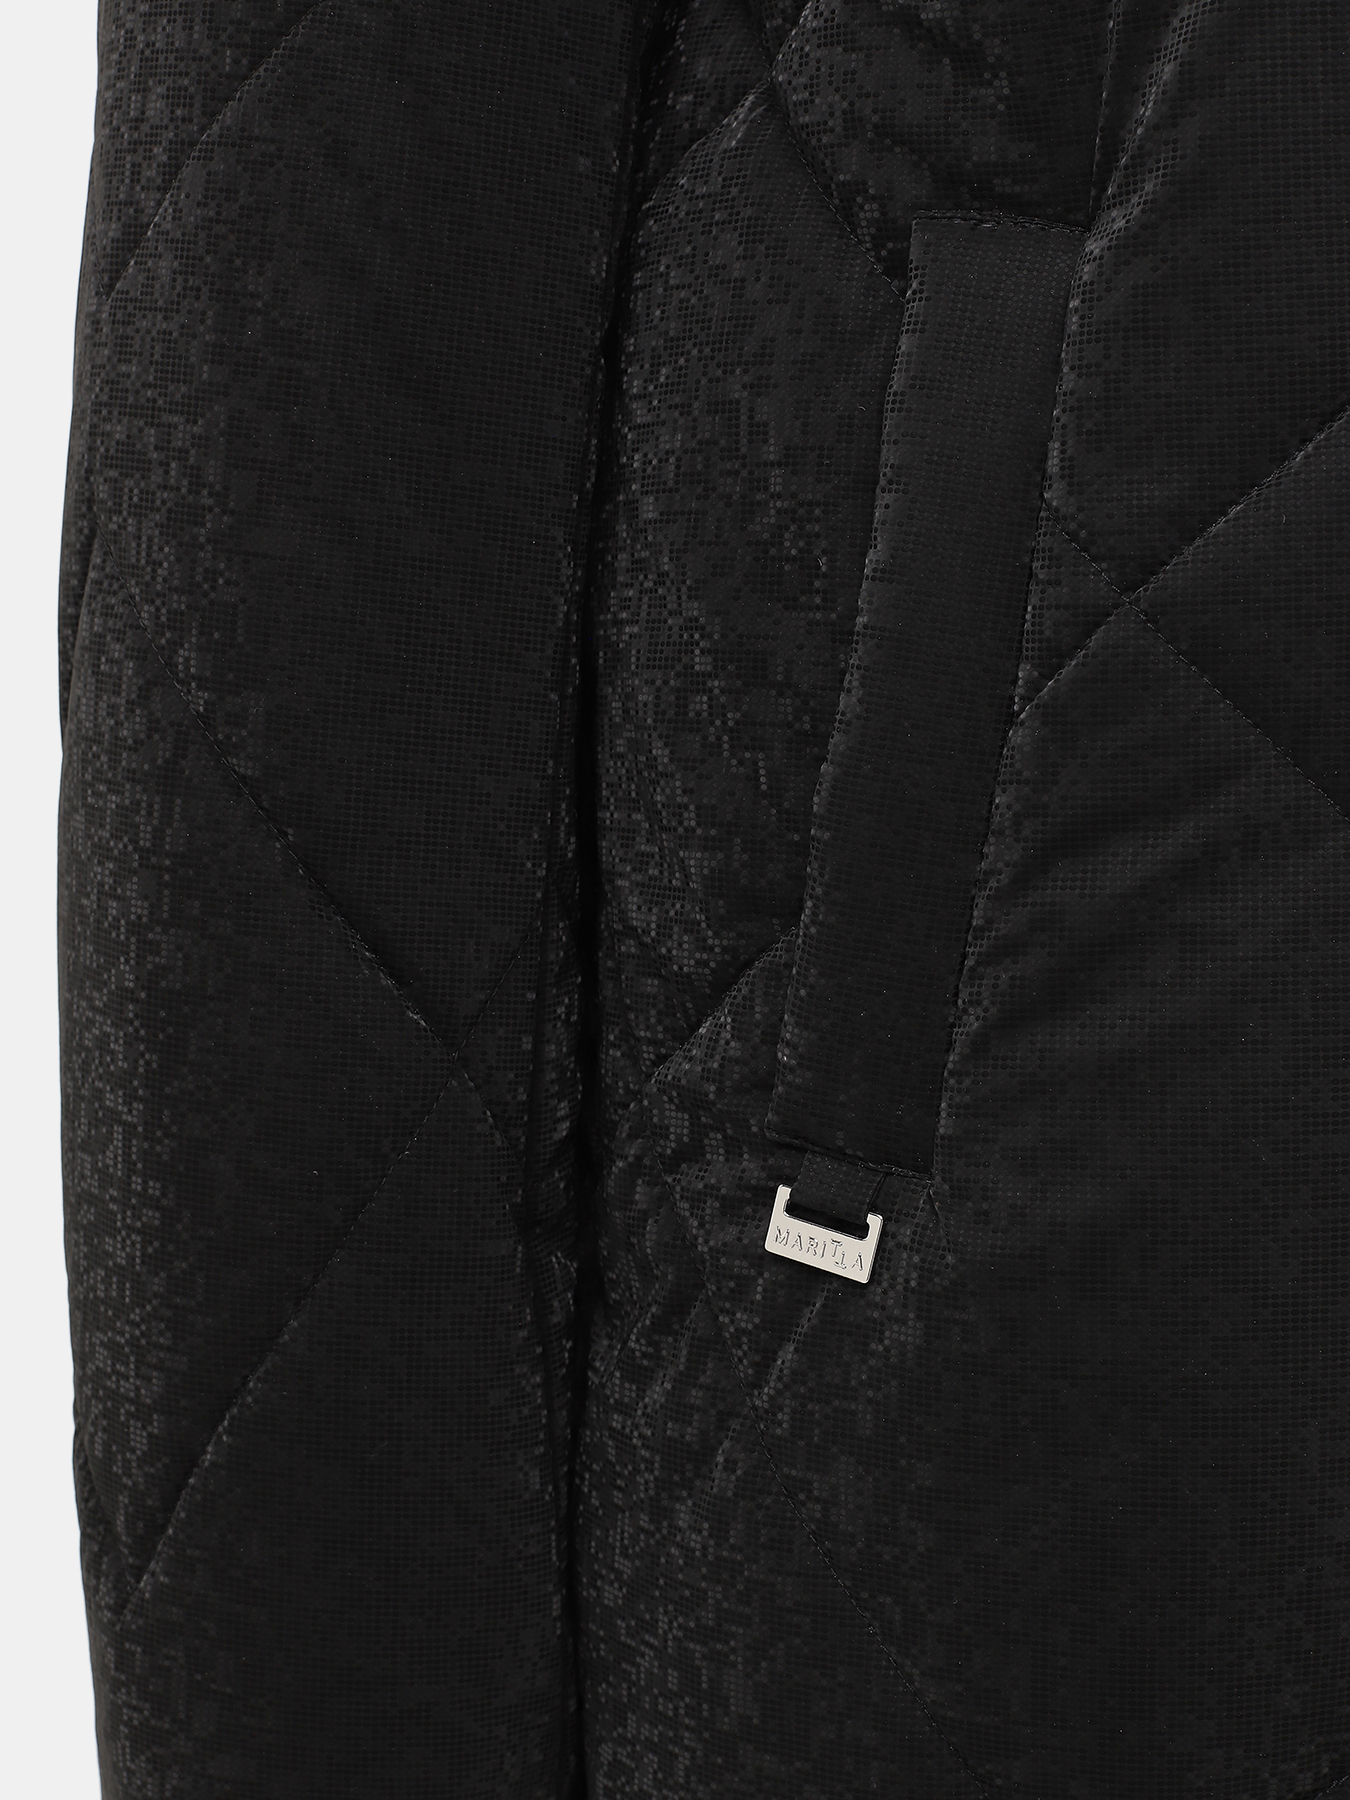 Пальто зимнее Maritta 433524-023, цвет черный, размер 50 - фото 5